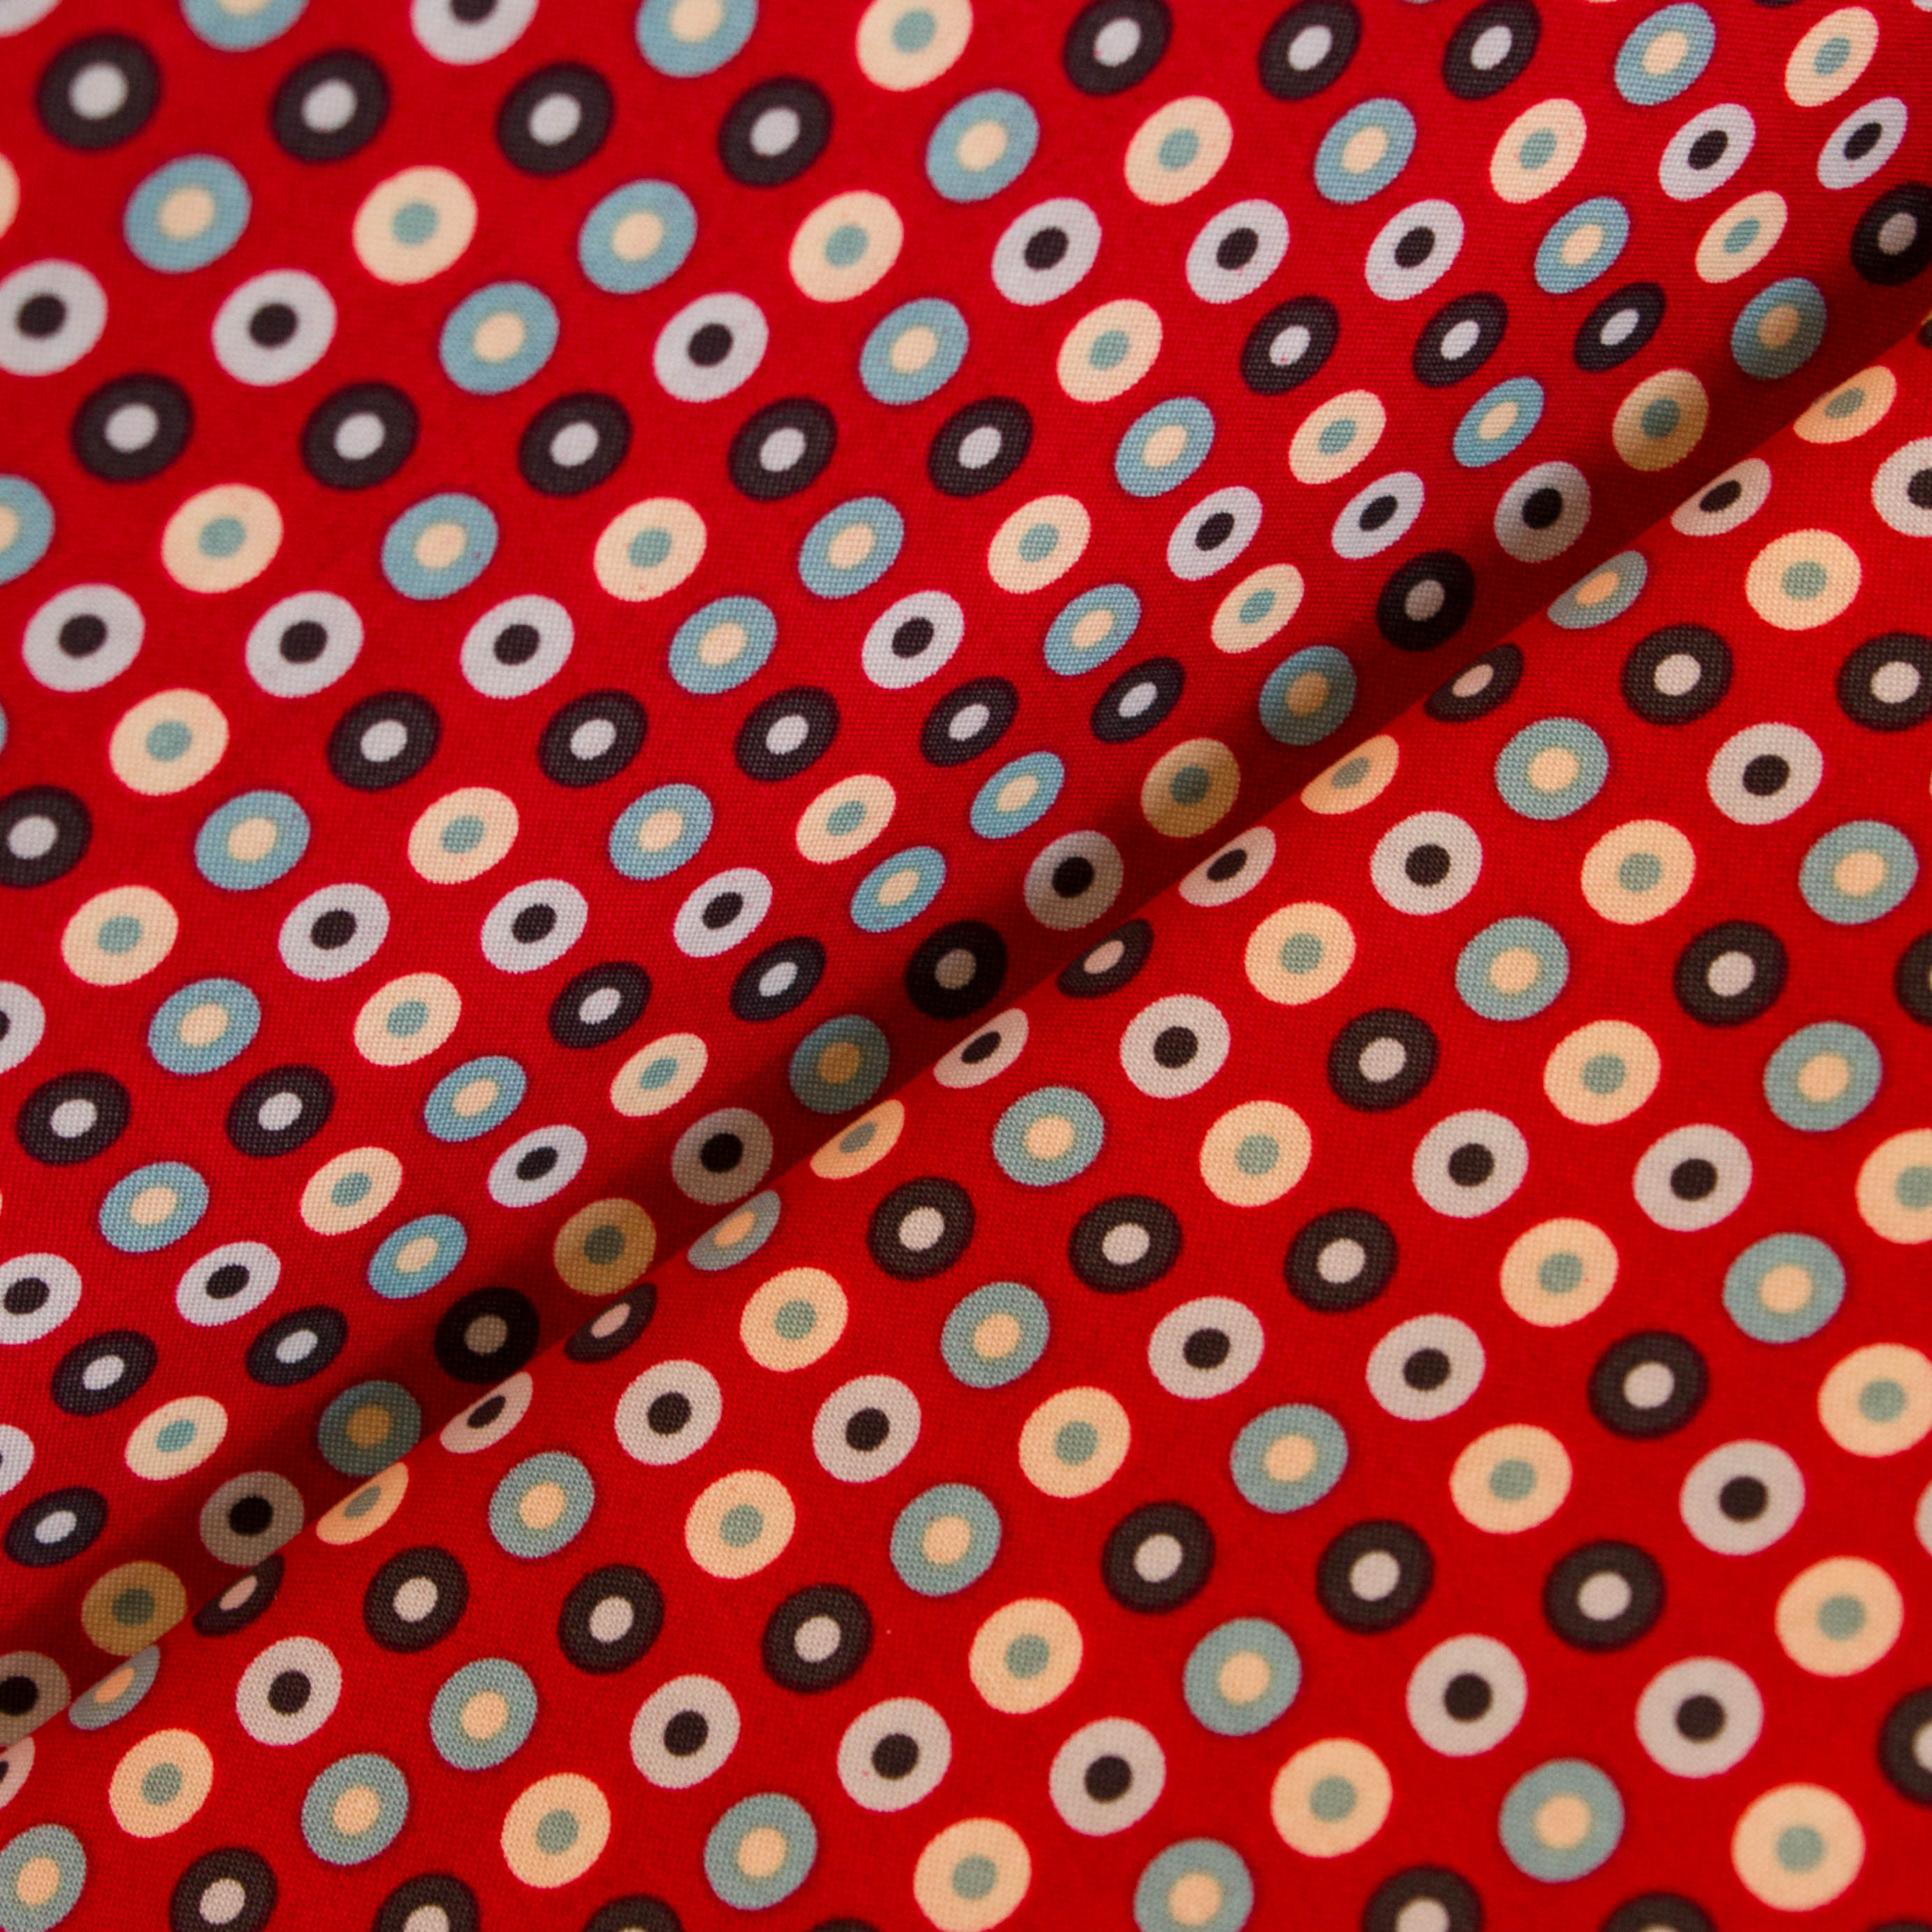 Katoen rood met bolletjes in verschillende tinten